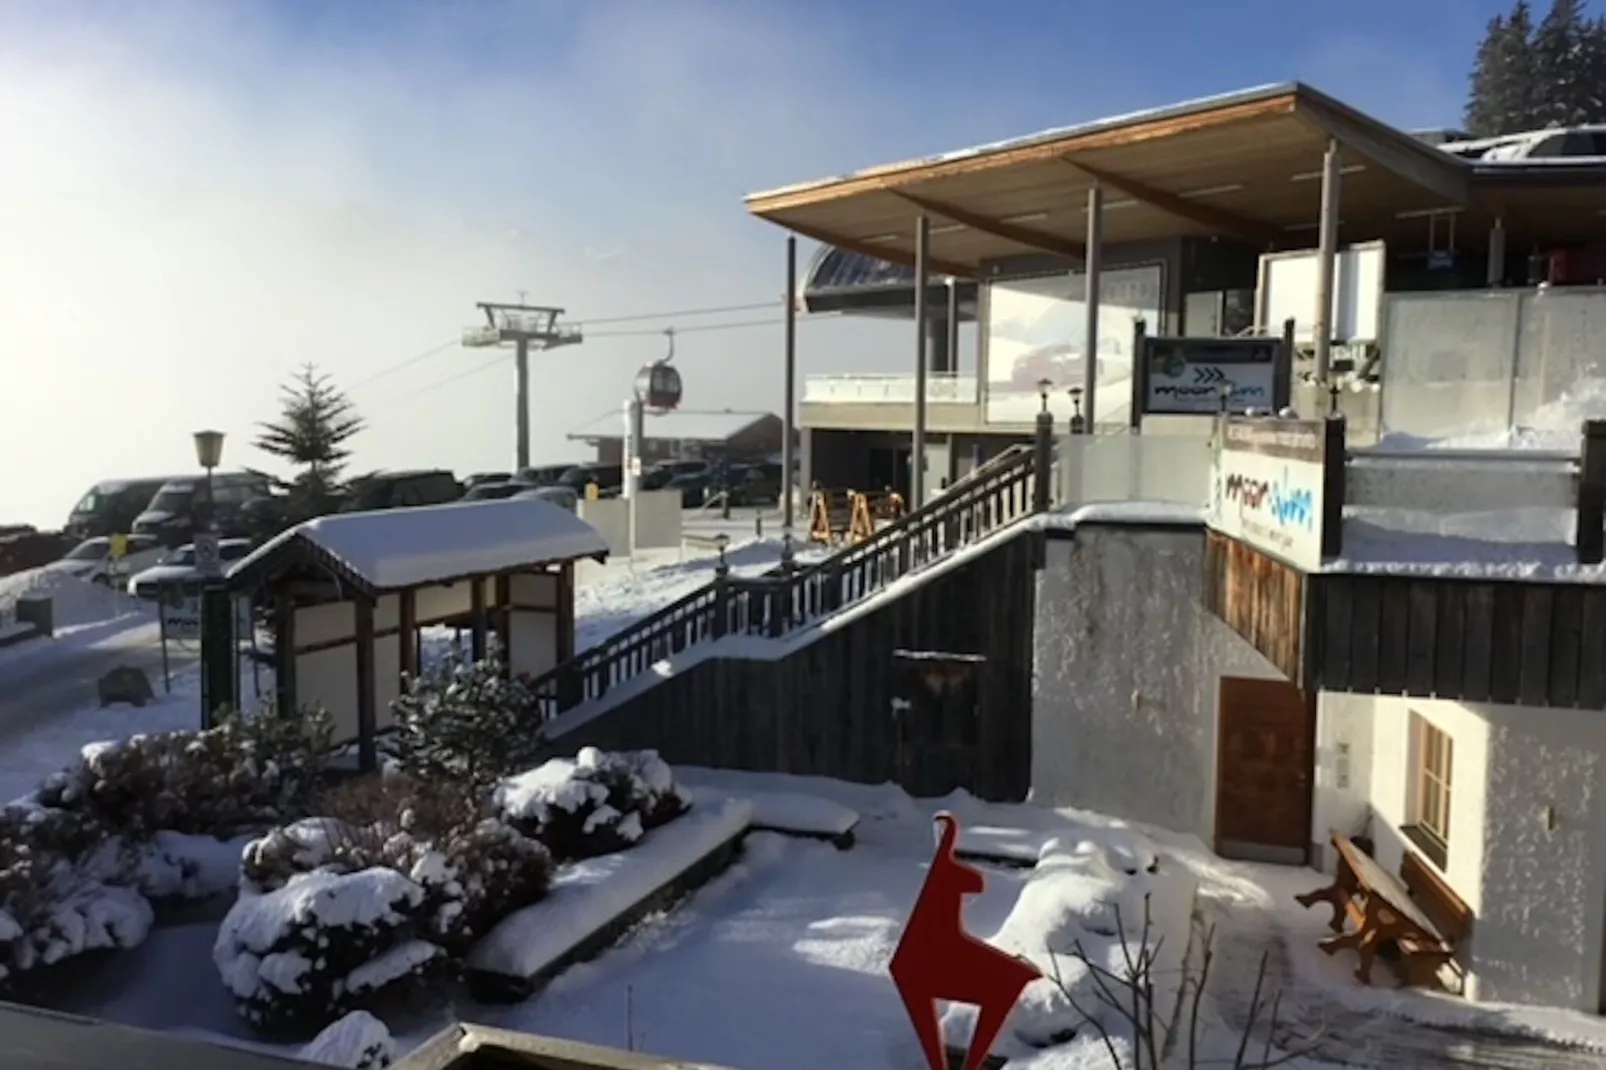 Panorama Chalet TOP 10-Uitzicht winter